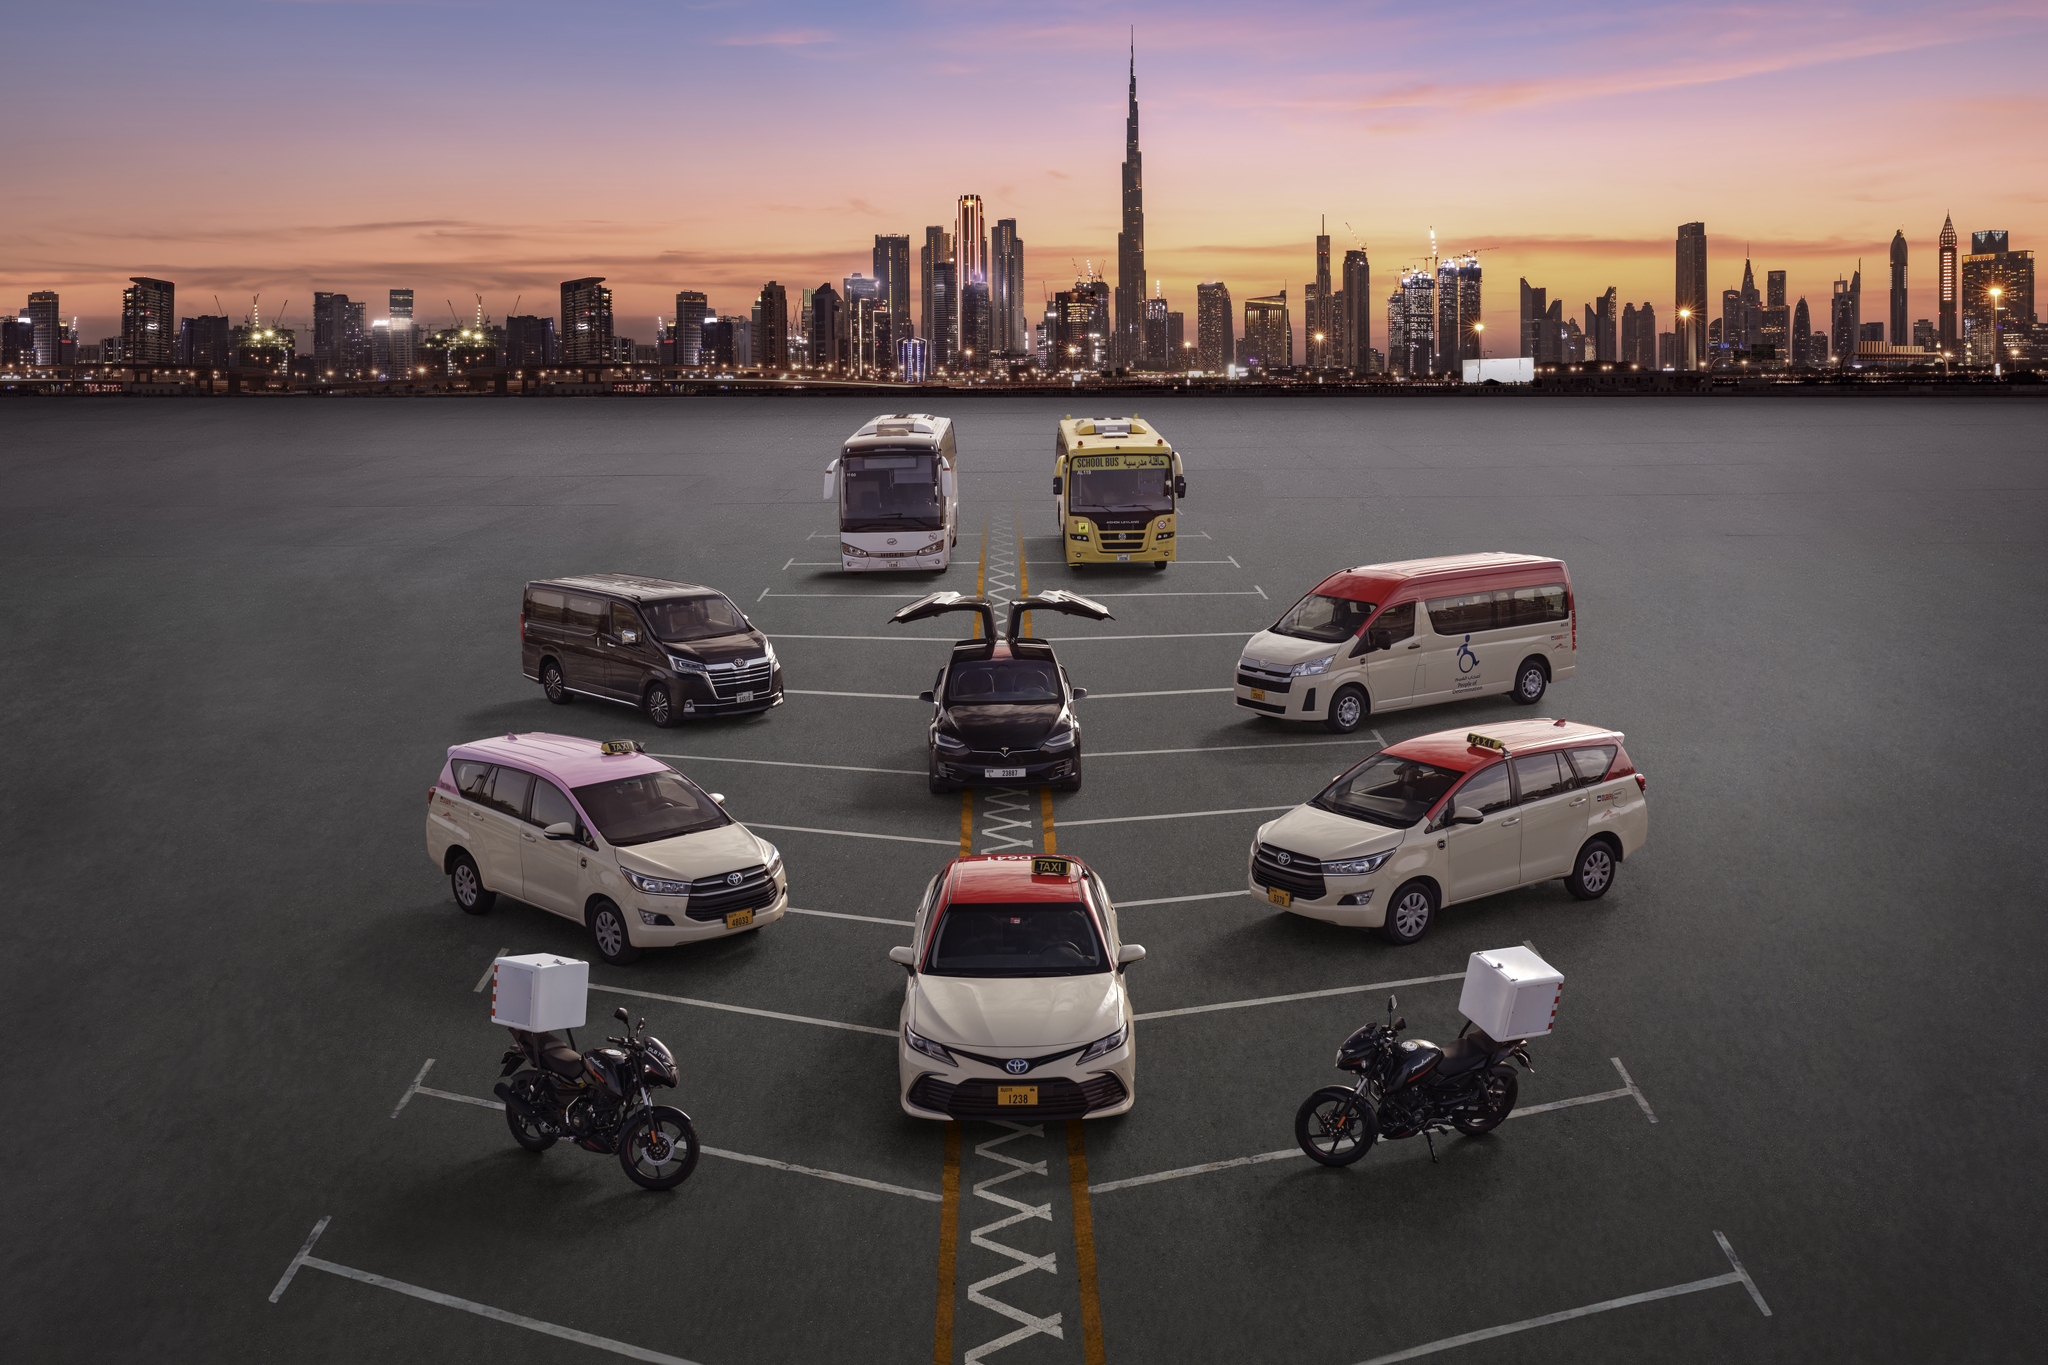 الأكبر في سوق دبي.. اكتتاب «تاكسي دبي» يتجاوز المستهدف بـ 130 مرة